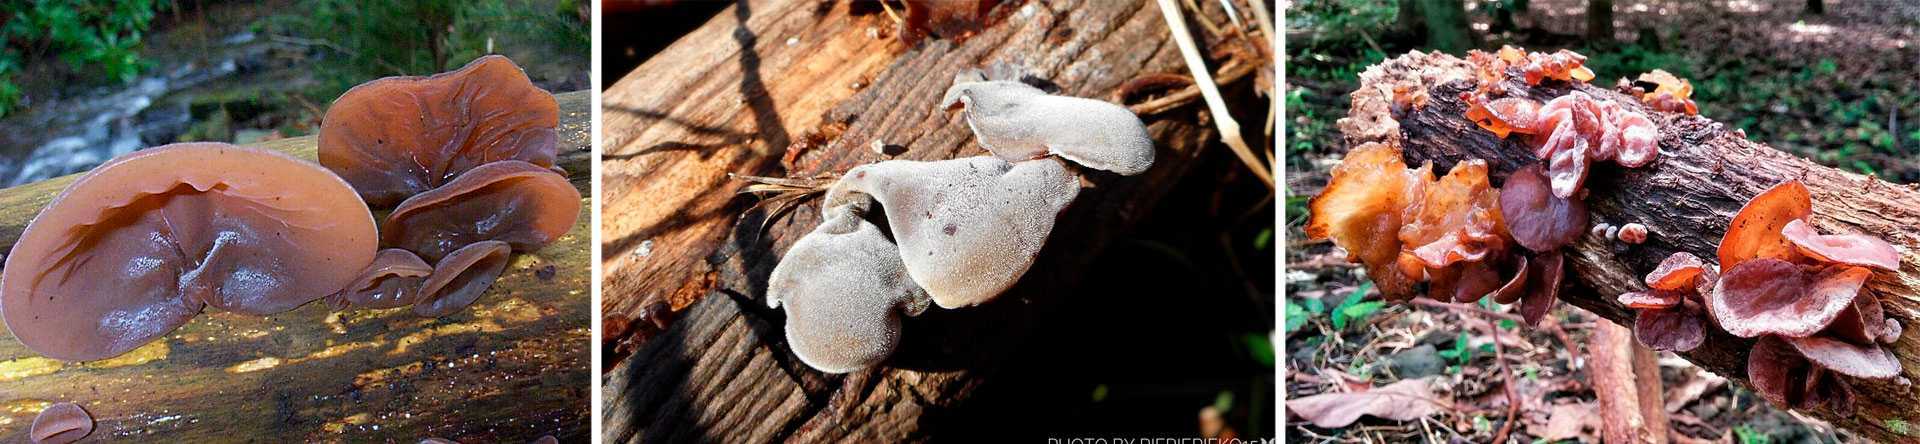 Аурикулярия уховидная, или иудино ухо: в чем целебные свойства гриба? | растения